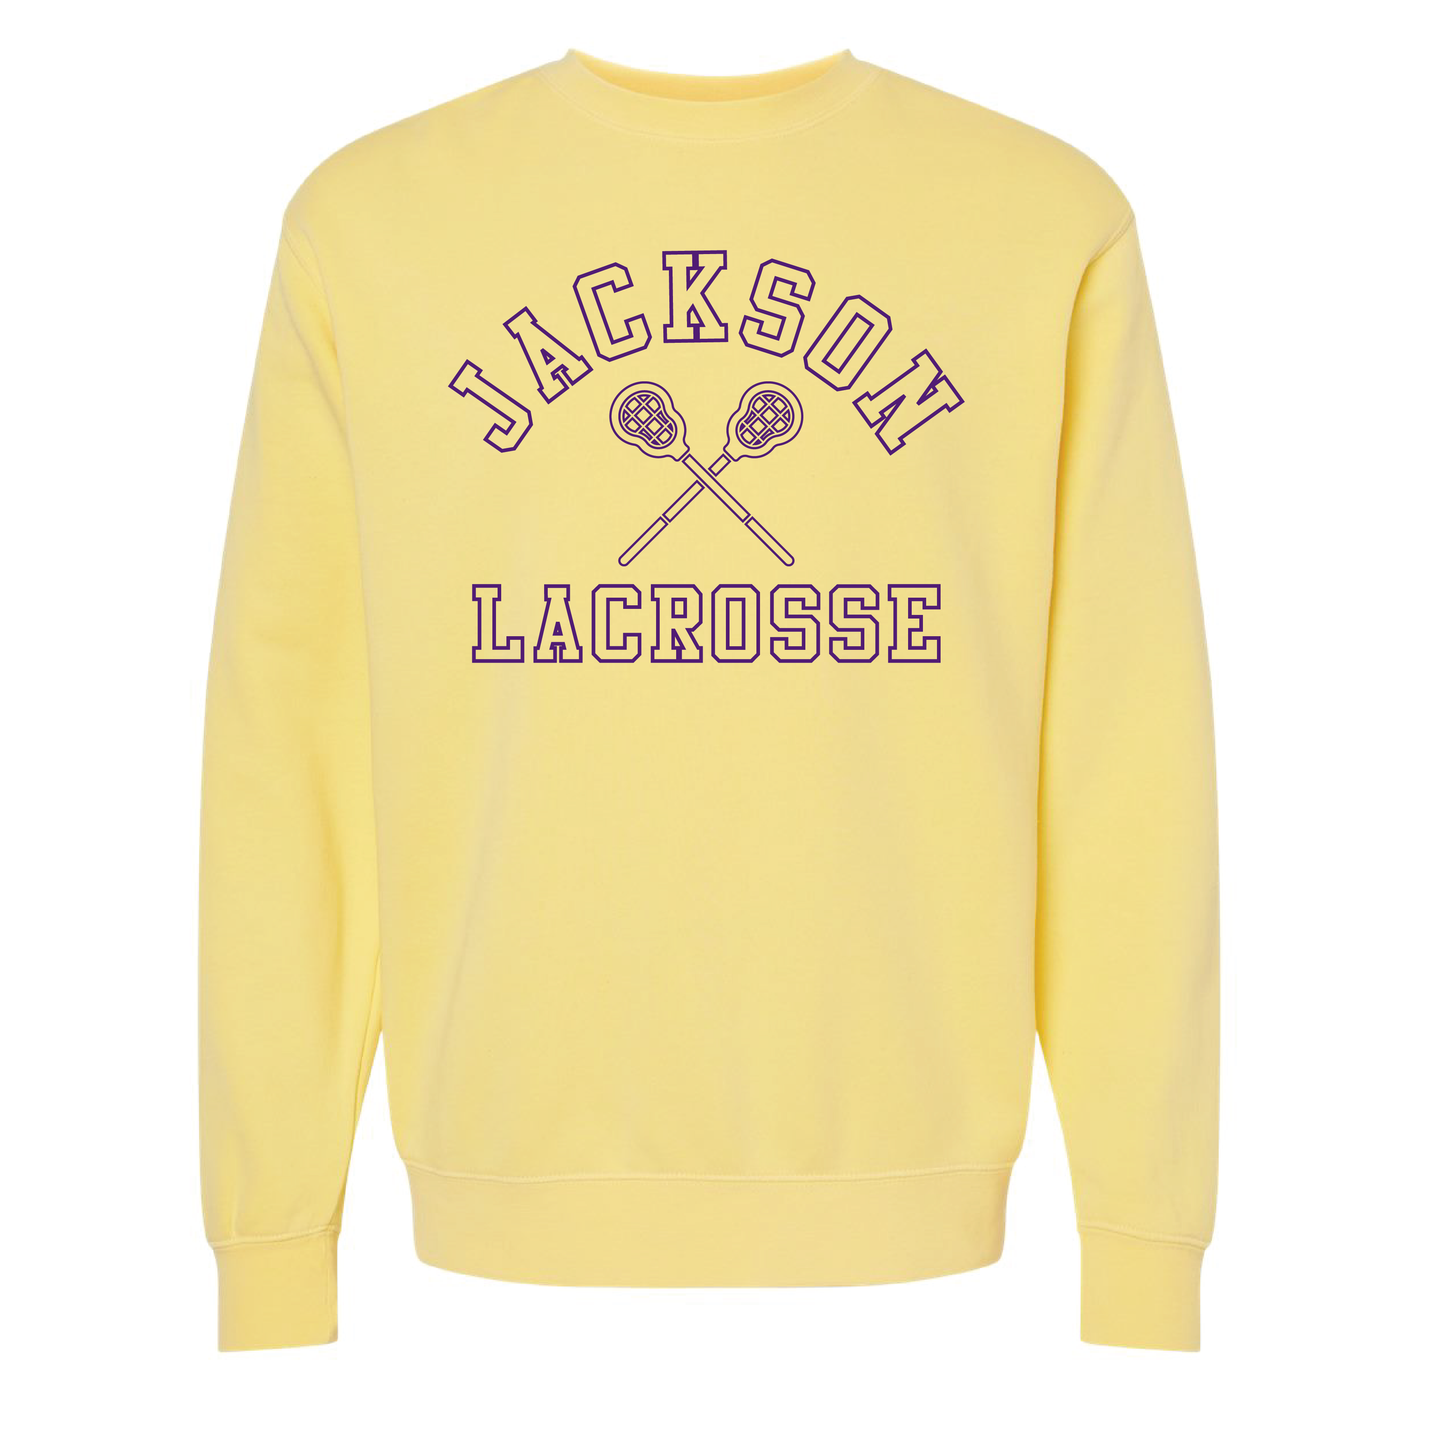 Jackson Lacrosse Vintage Yellow Sweatshirt